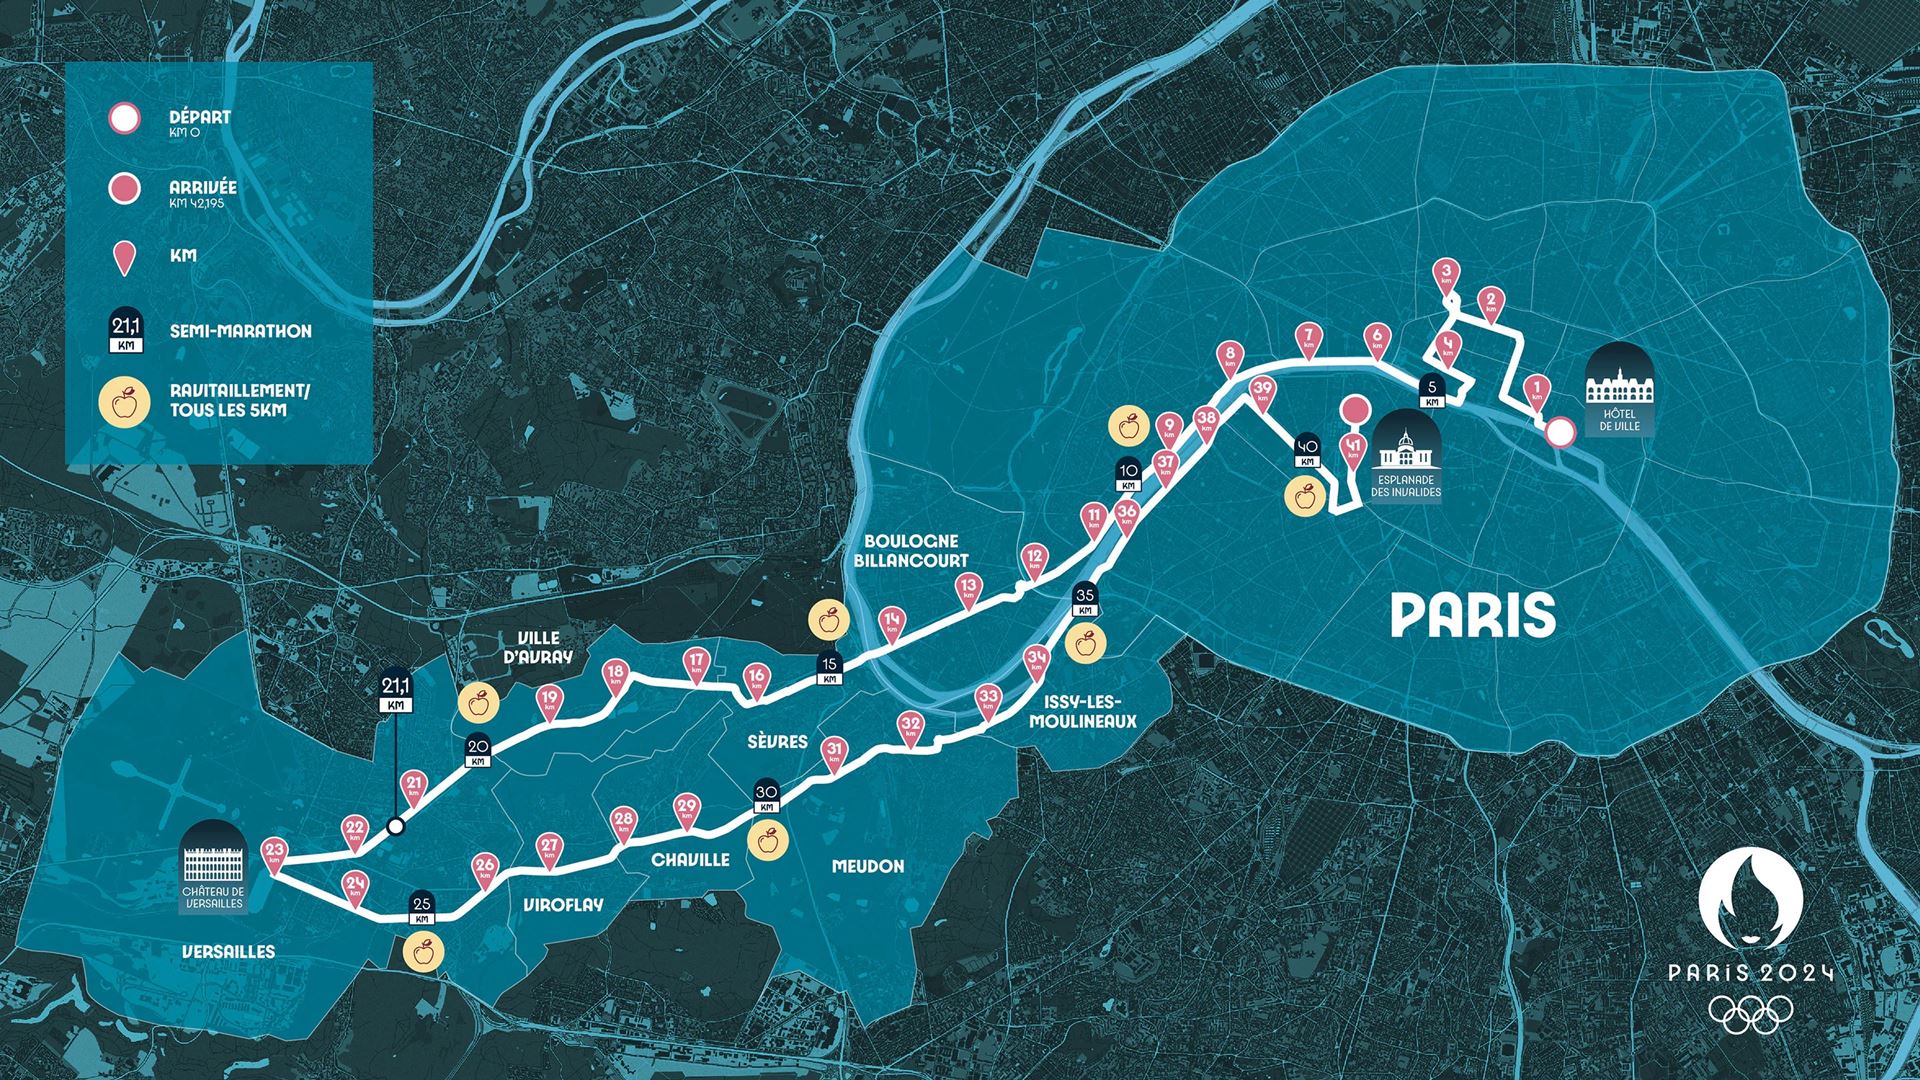 Paris 2024 reveals spectacular Olympic marathon route set against a